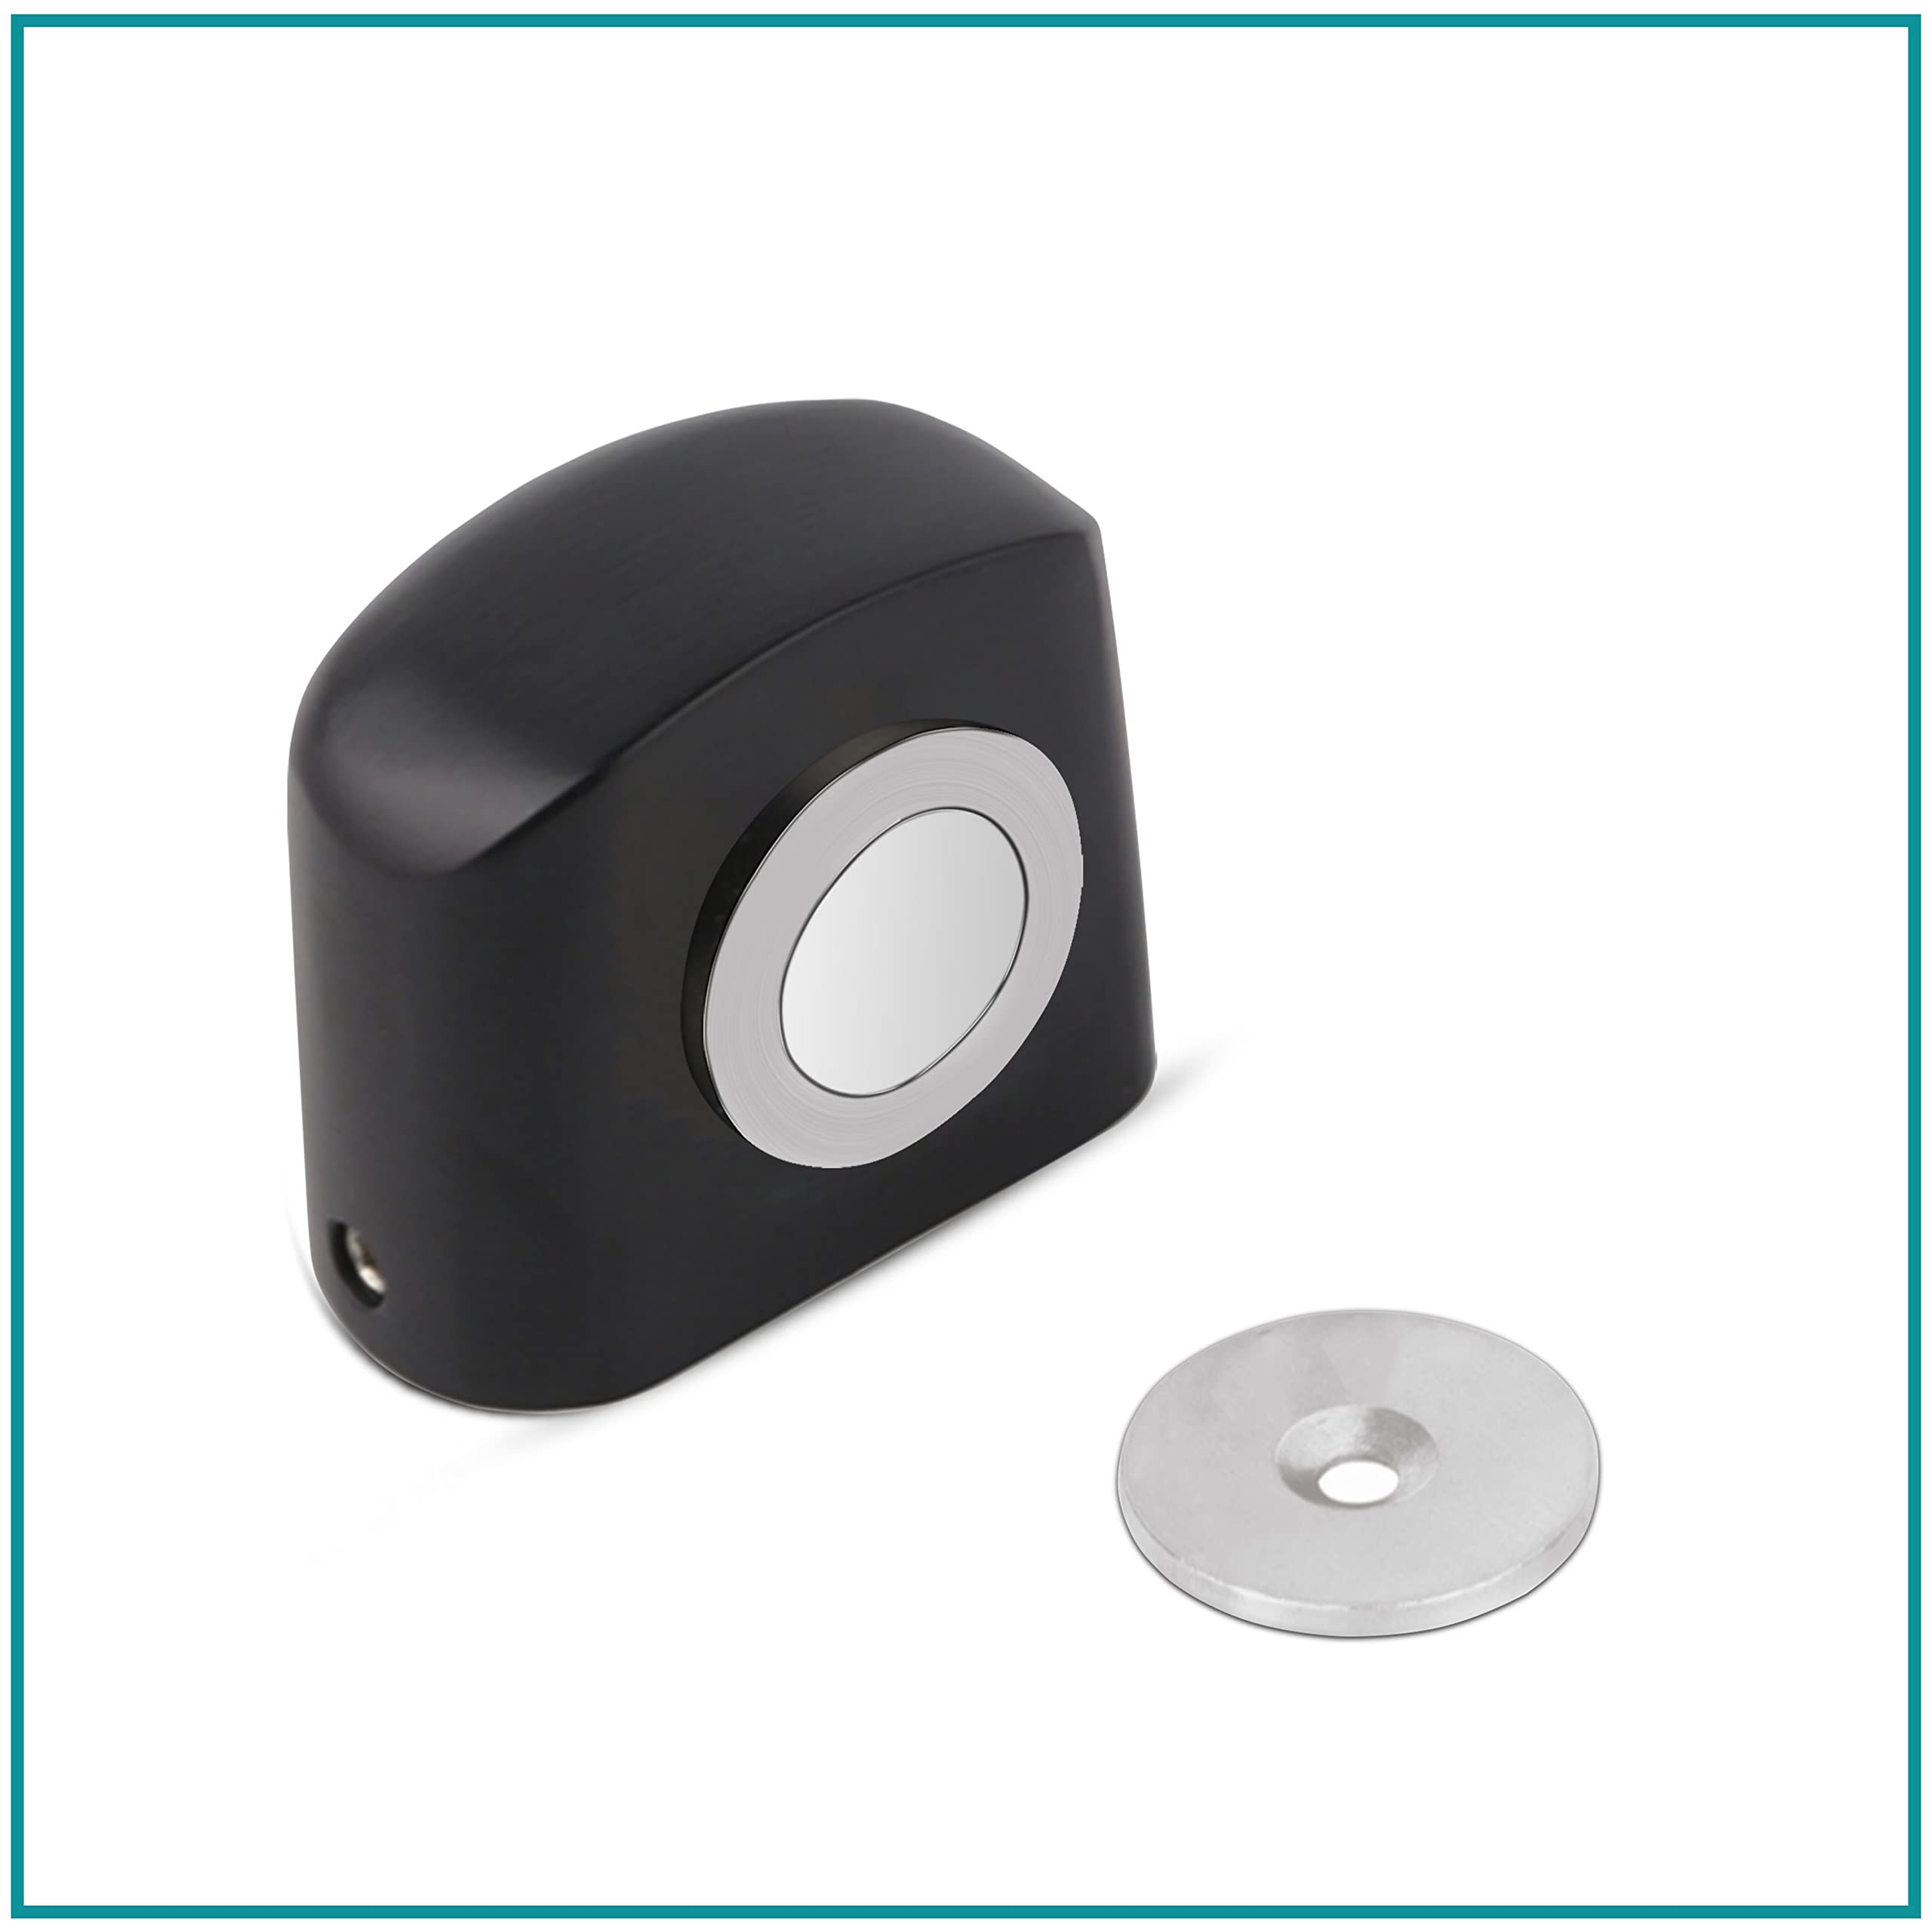 Plantex Heavy Duty Door Magnet Stopper/Door Catch Holder for Home/Office/Hotel, Floor Mounted Soft-Catcher to Hold Wooden/Glass/PVC Door - Pack of 6 (193 - Black)